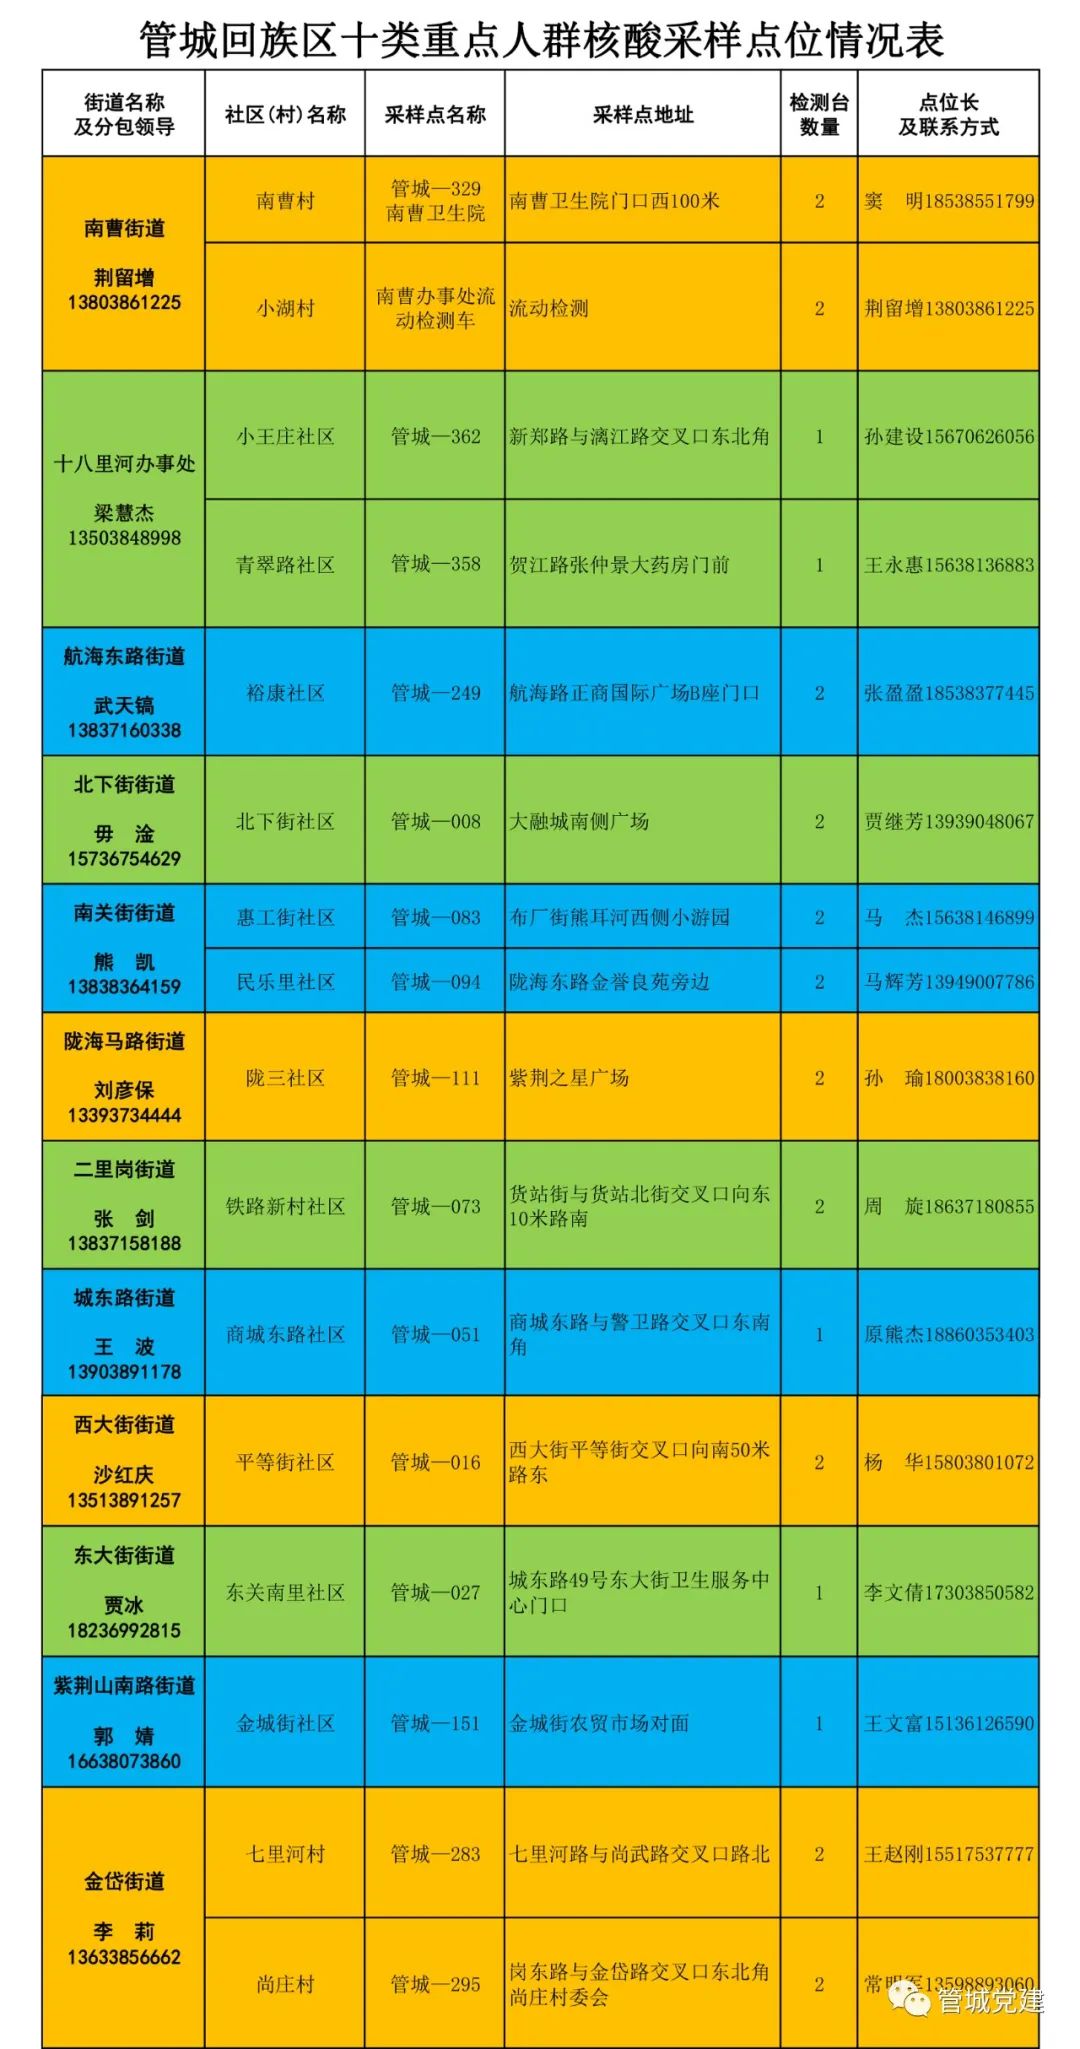 郑州管城回族区发布通告 11月8日持续开展核酸检测筛查工作